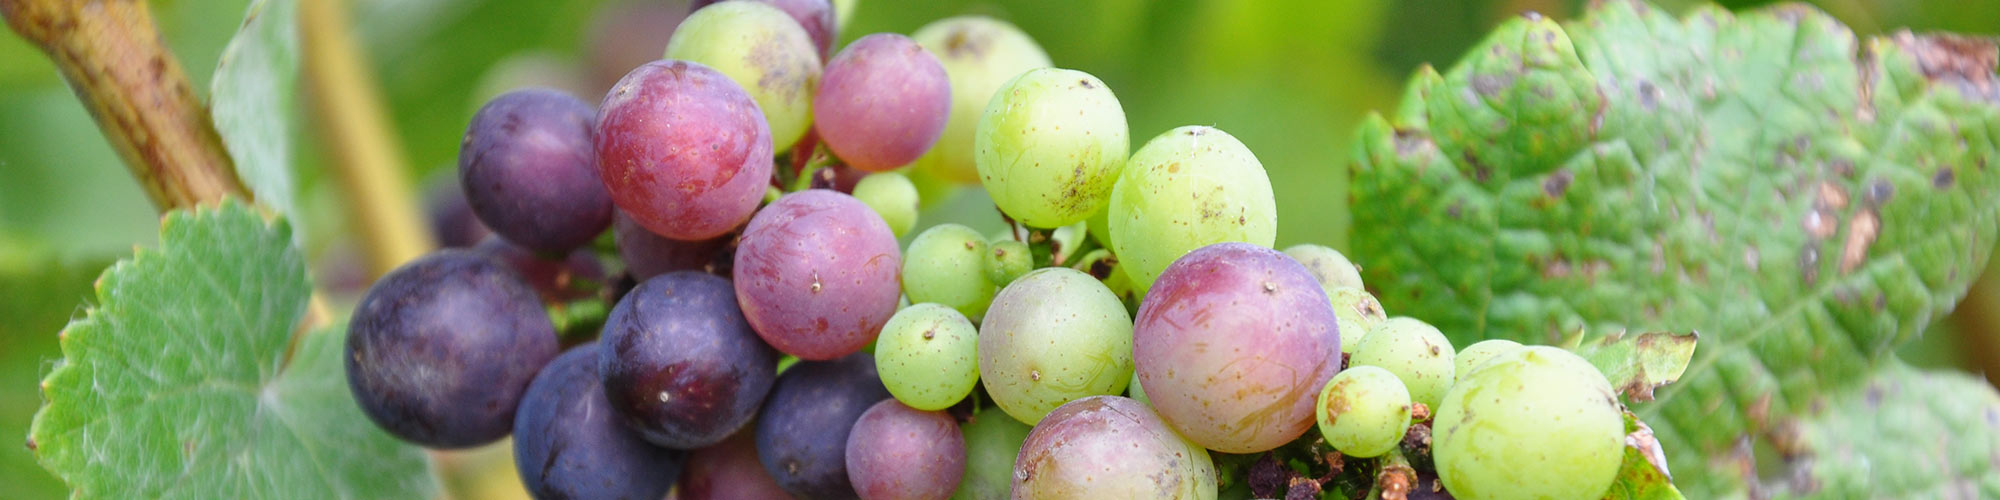 Vineyard Management